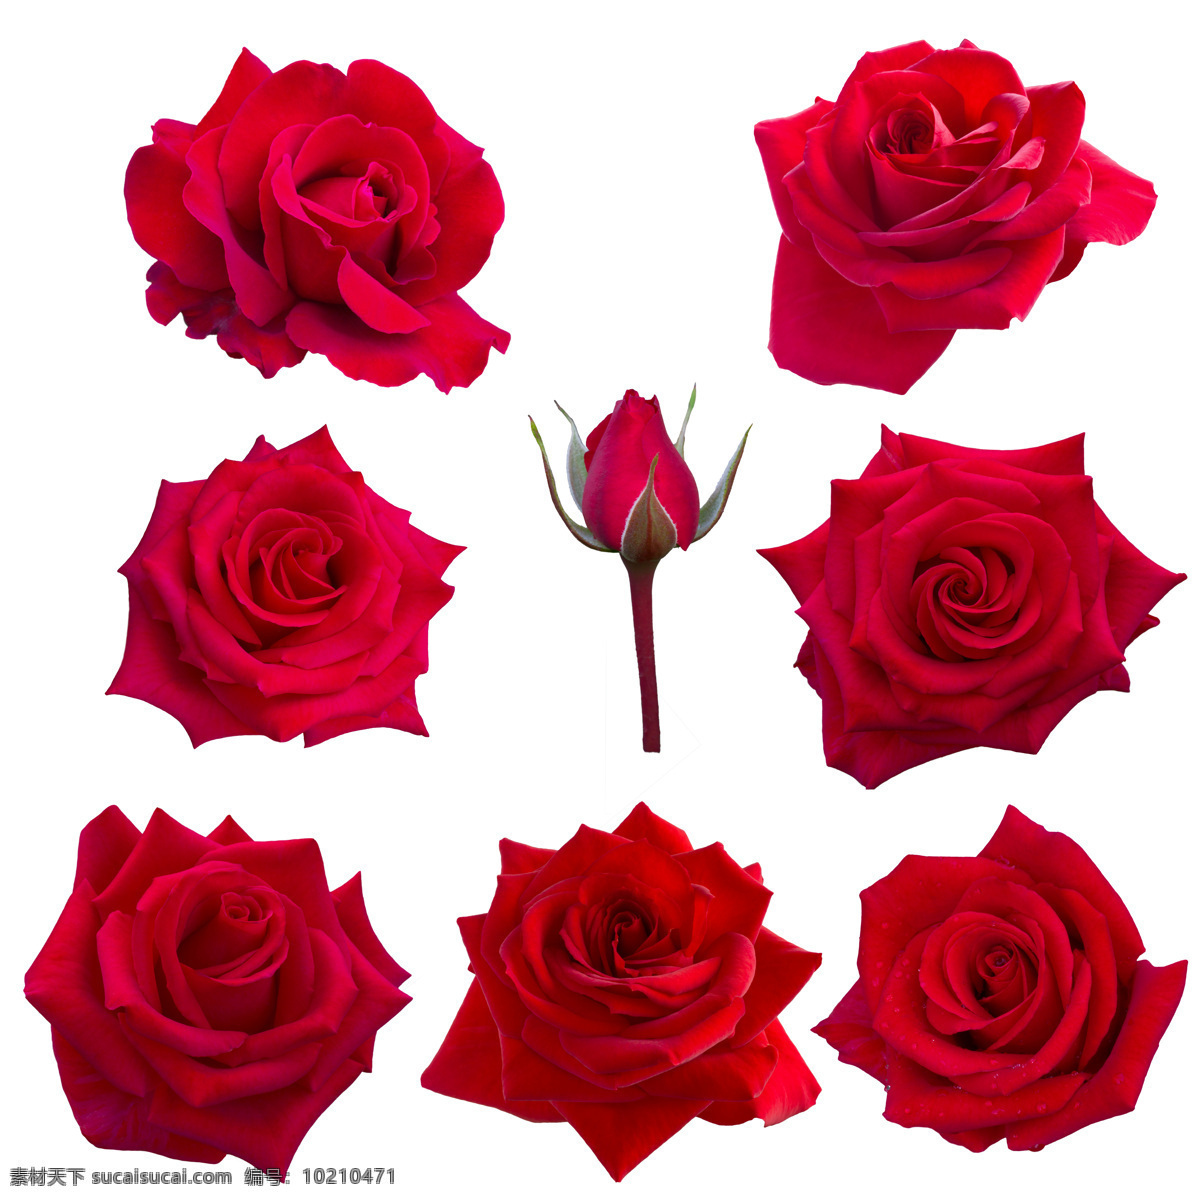 红色玫瑰花 高清图片 玫瑰花 花瓣 玫瑰花特写 一堆玫瑰花 好看玫瑰花 花蕾 花苞 花 自然景观 自然风景